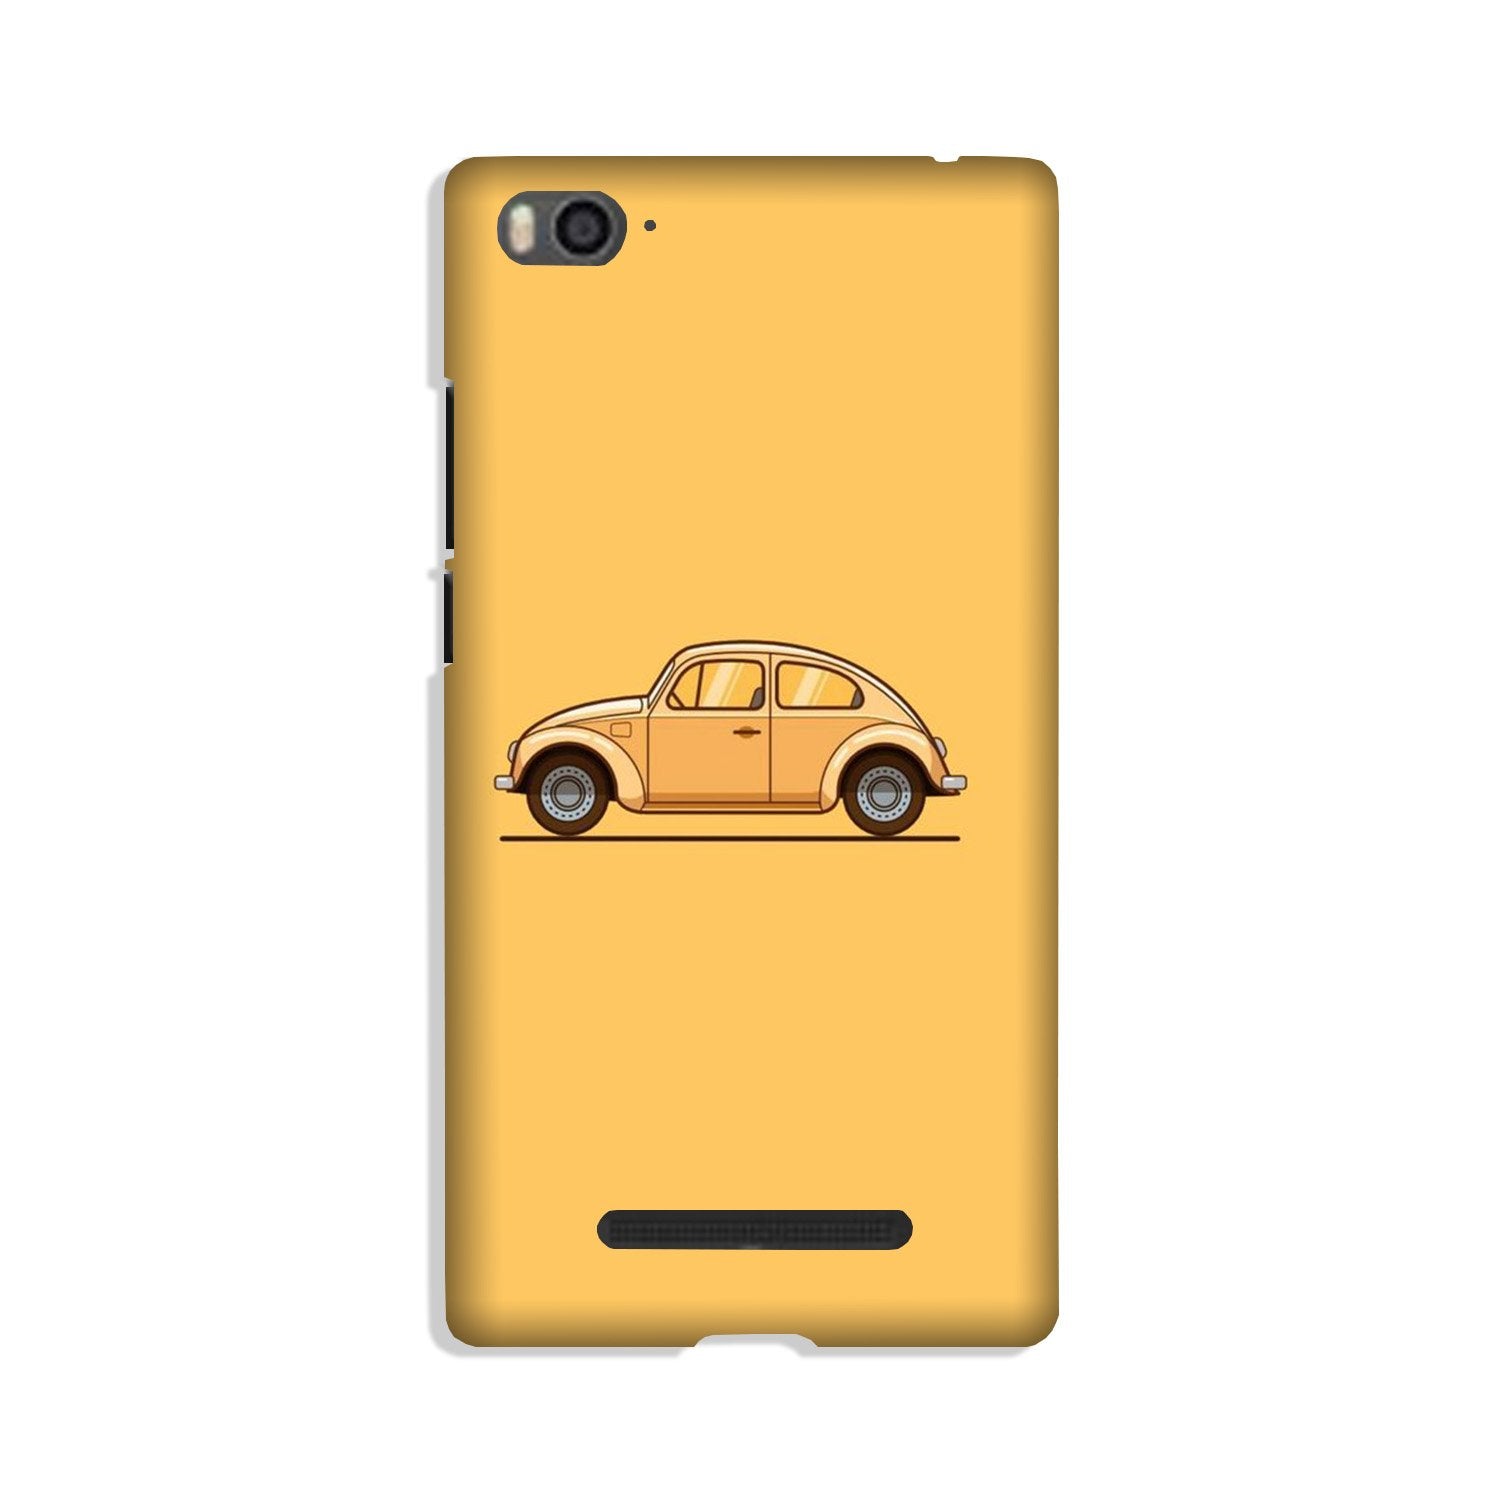 Vintage Car Case for Xiaomi Mi 4i (Design No. 262)